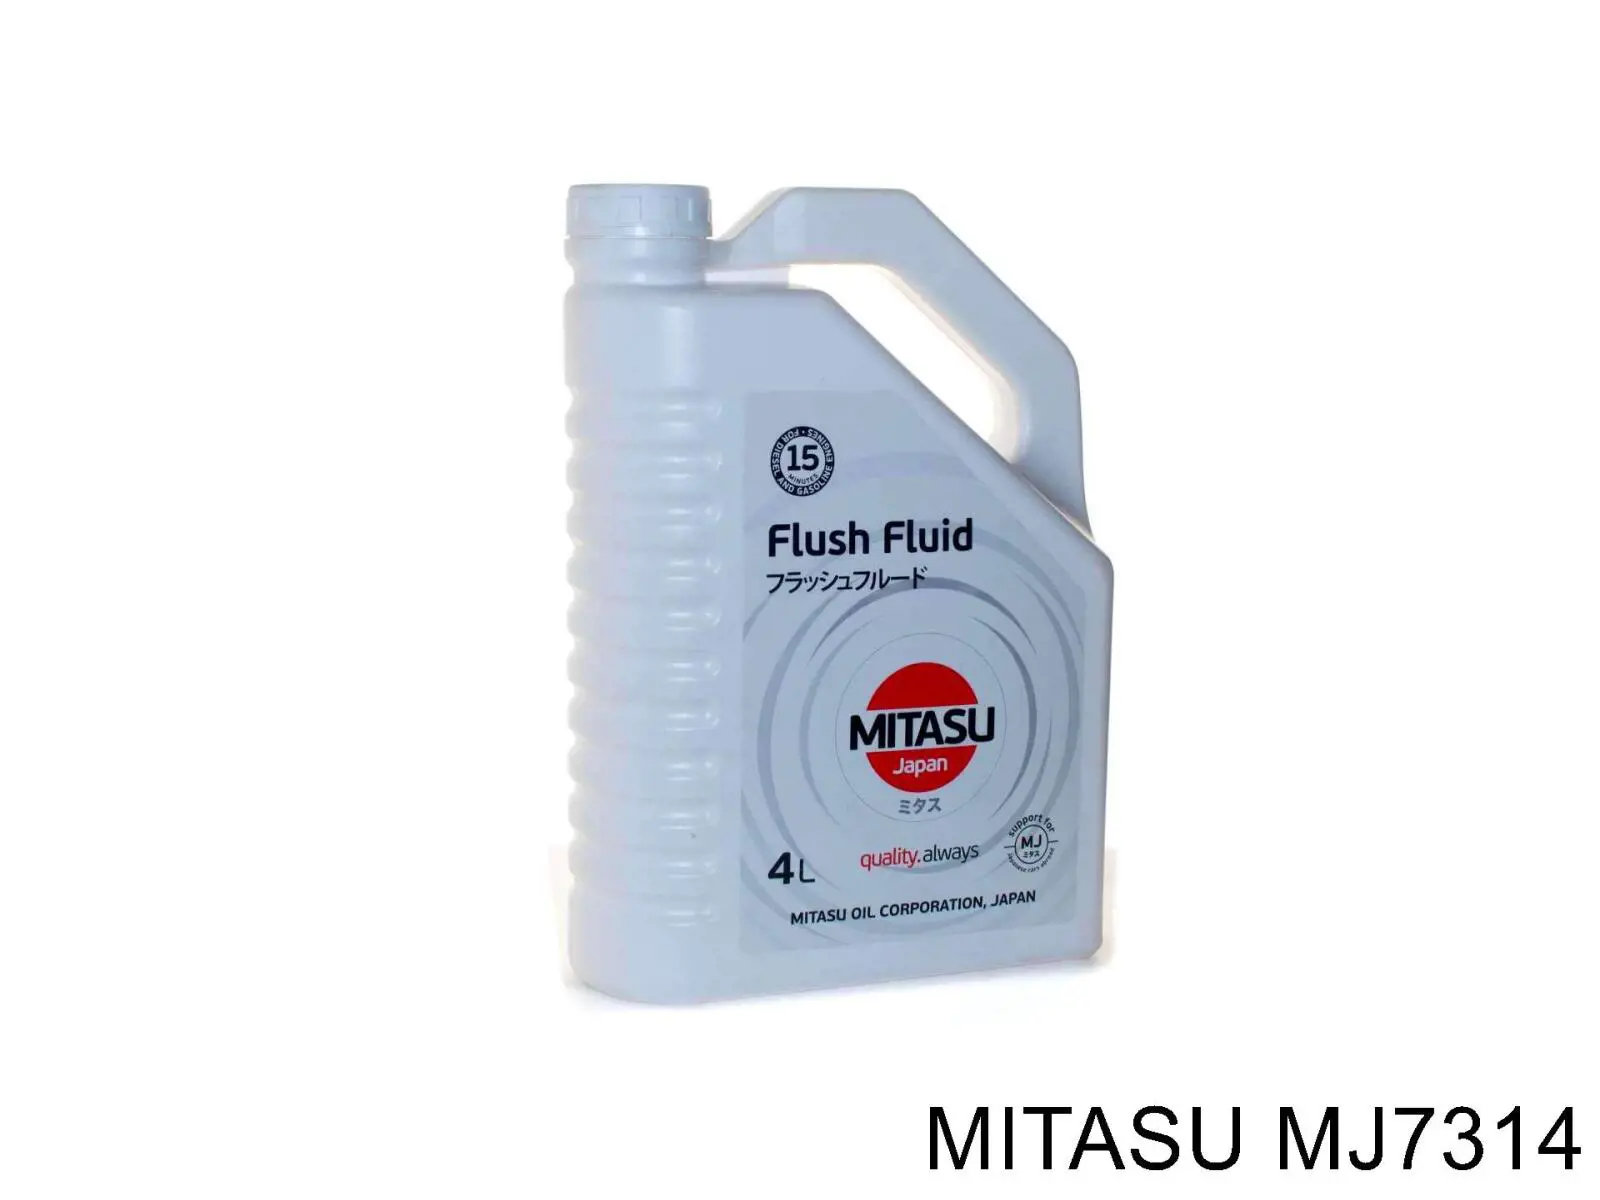 MJ7314 Mitasu очиститель масляной системы Очистители масляной системы, 4л